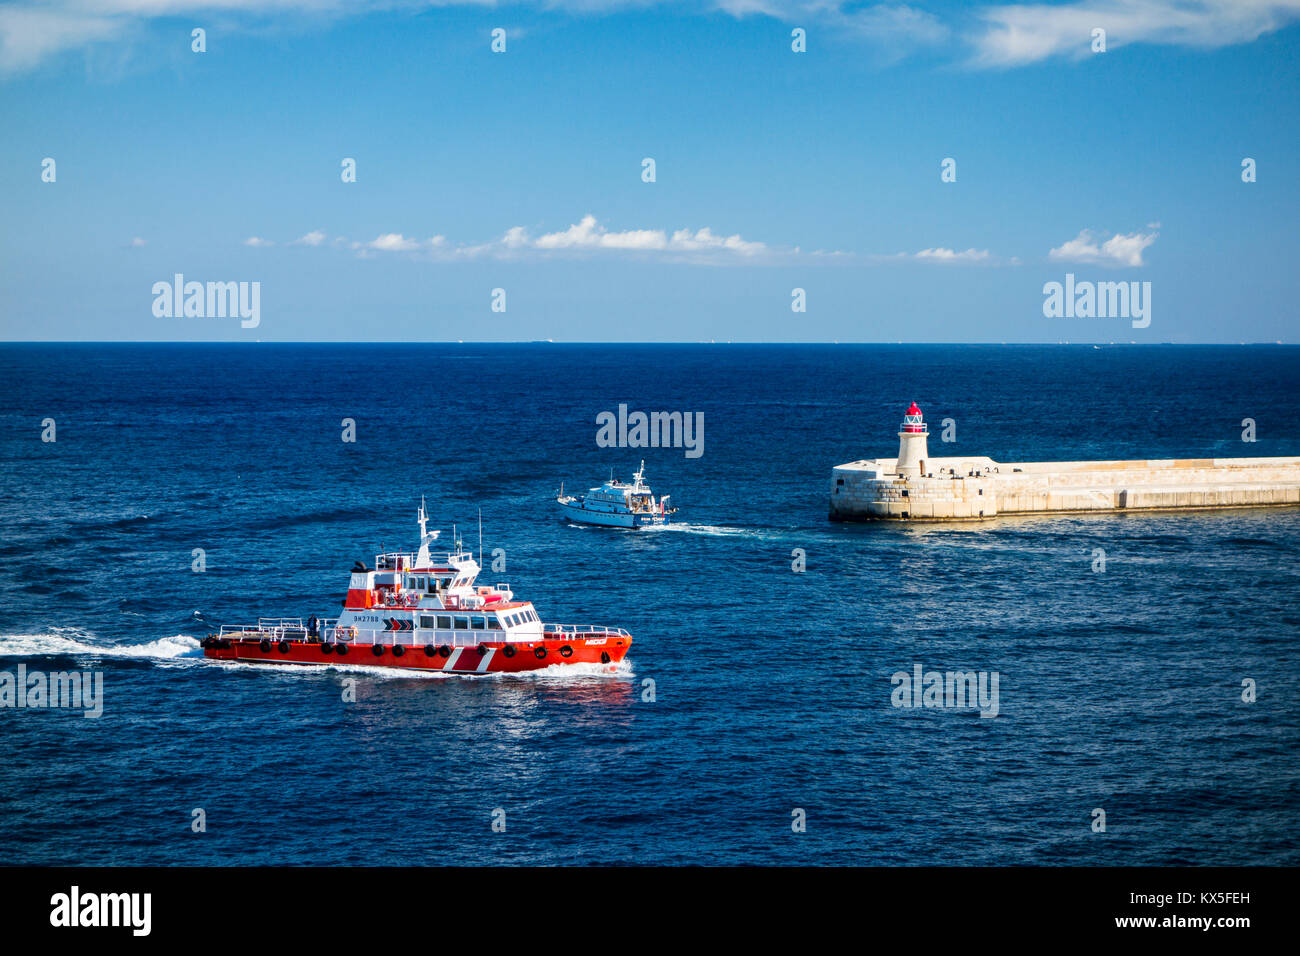 Il Grand Harbour di La Valletta, capitale europea della cultura nel 2018, Malta, Europa Foto Stock